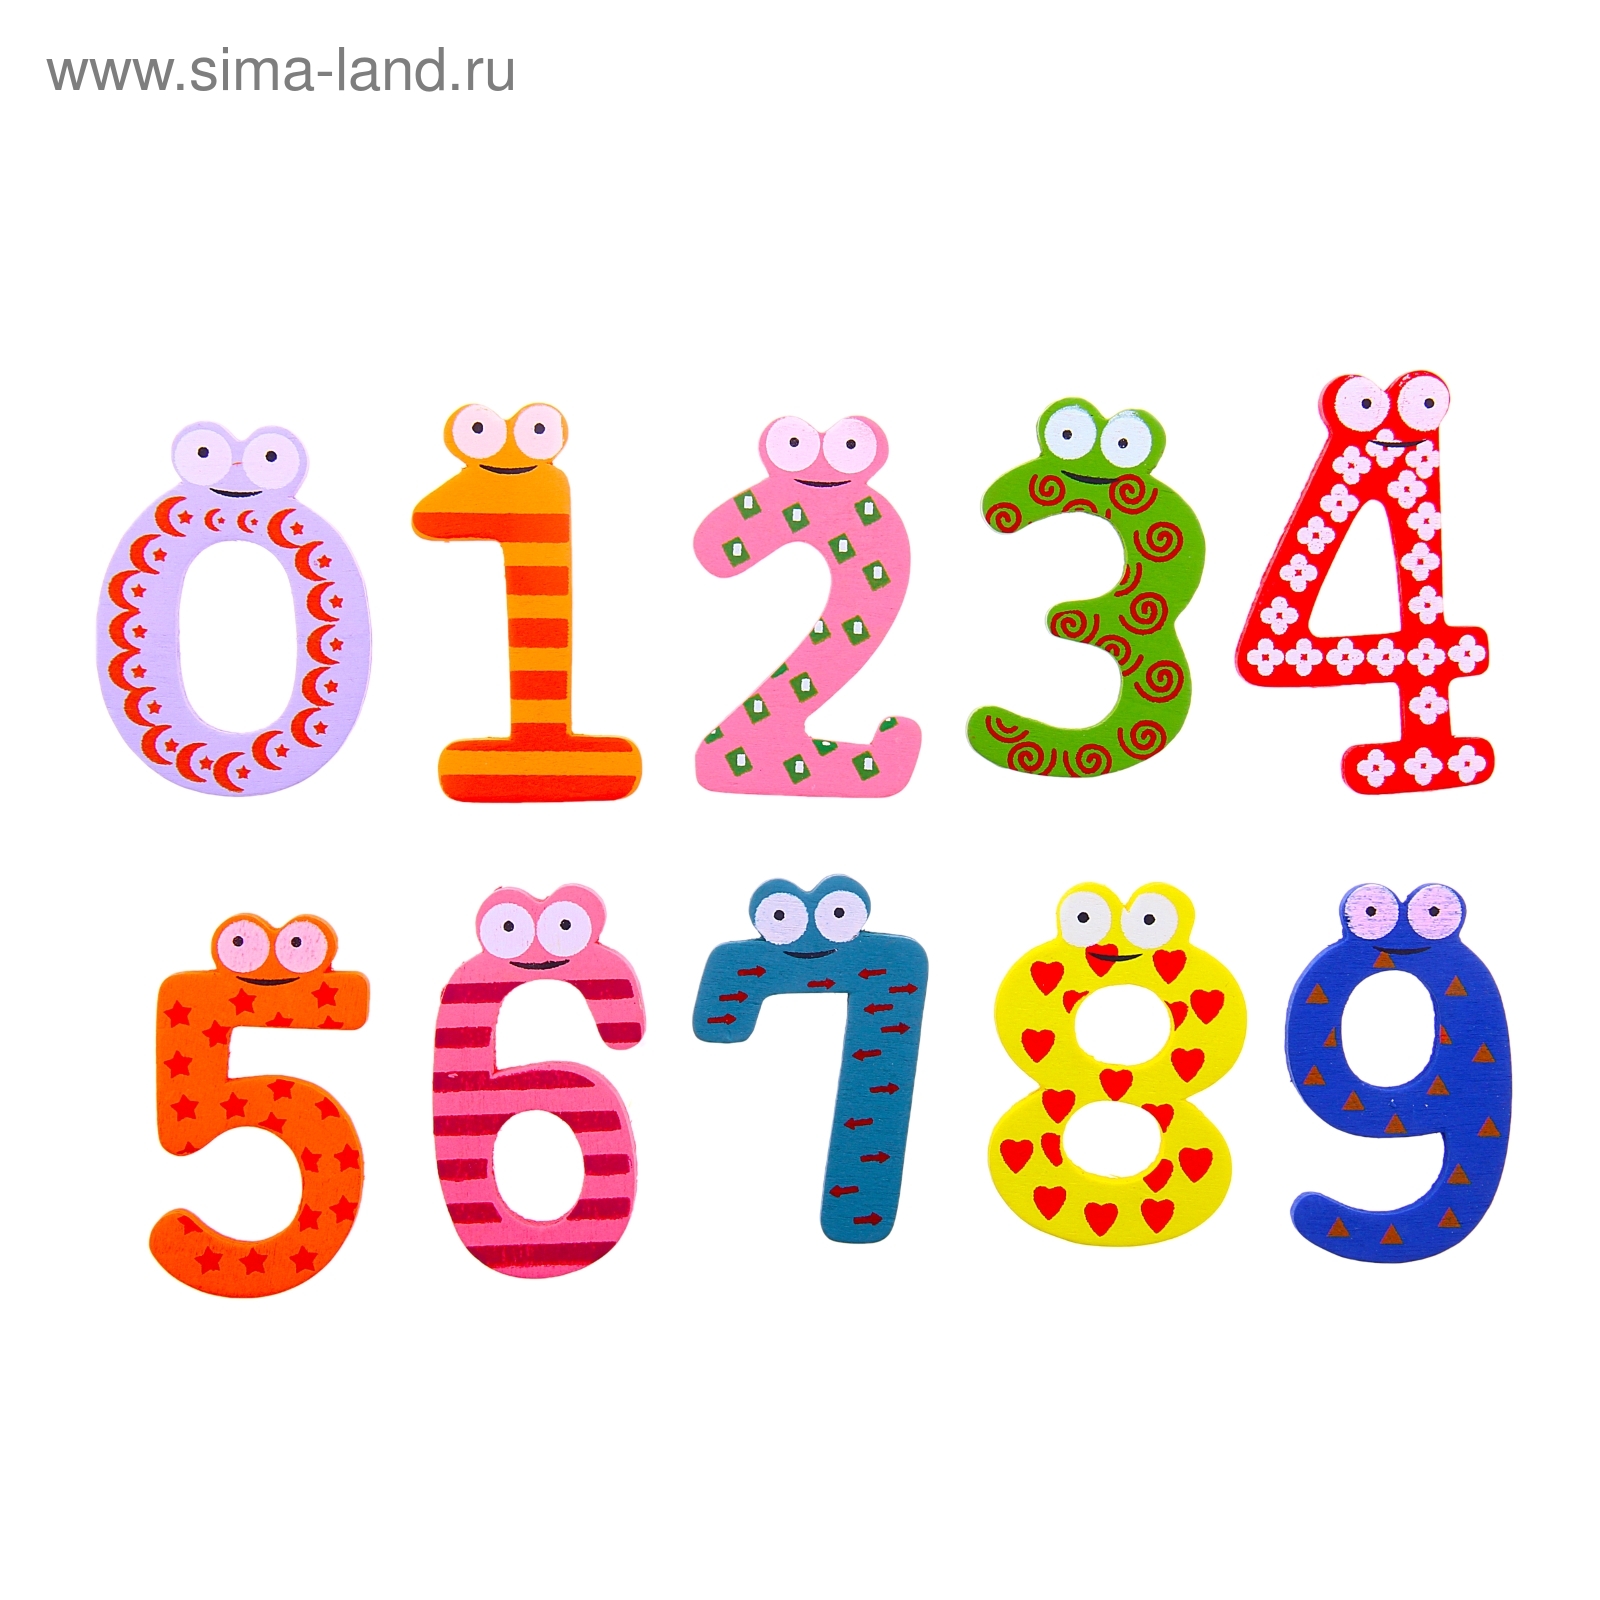 Буквы и цифры для детей